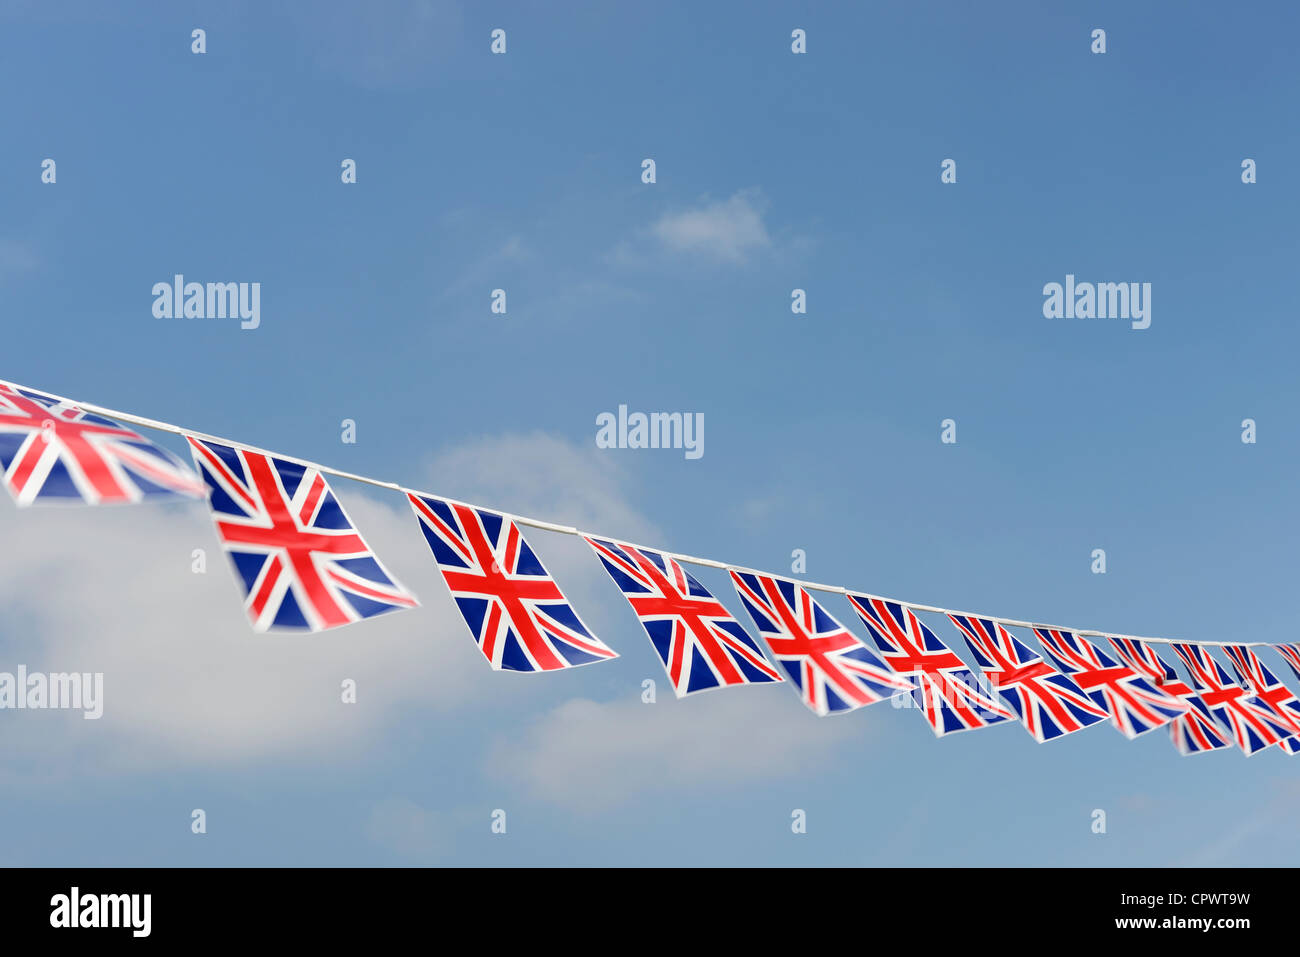 UK Union Jack flag bunting Stock Photo